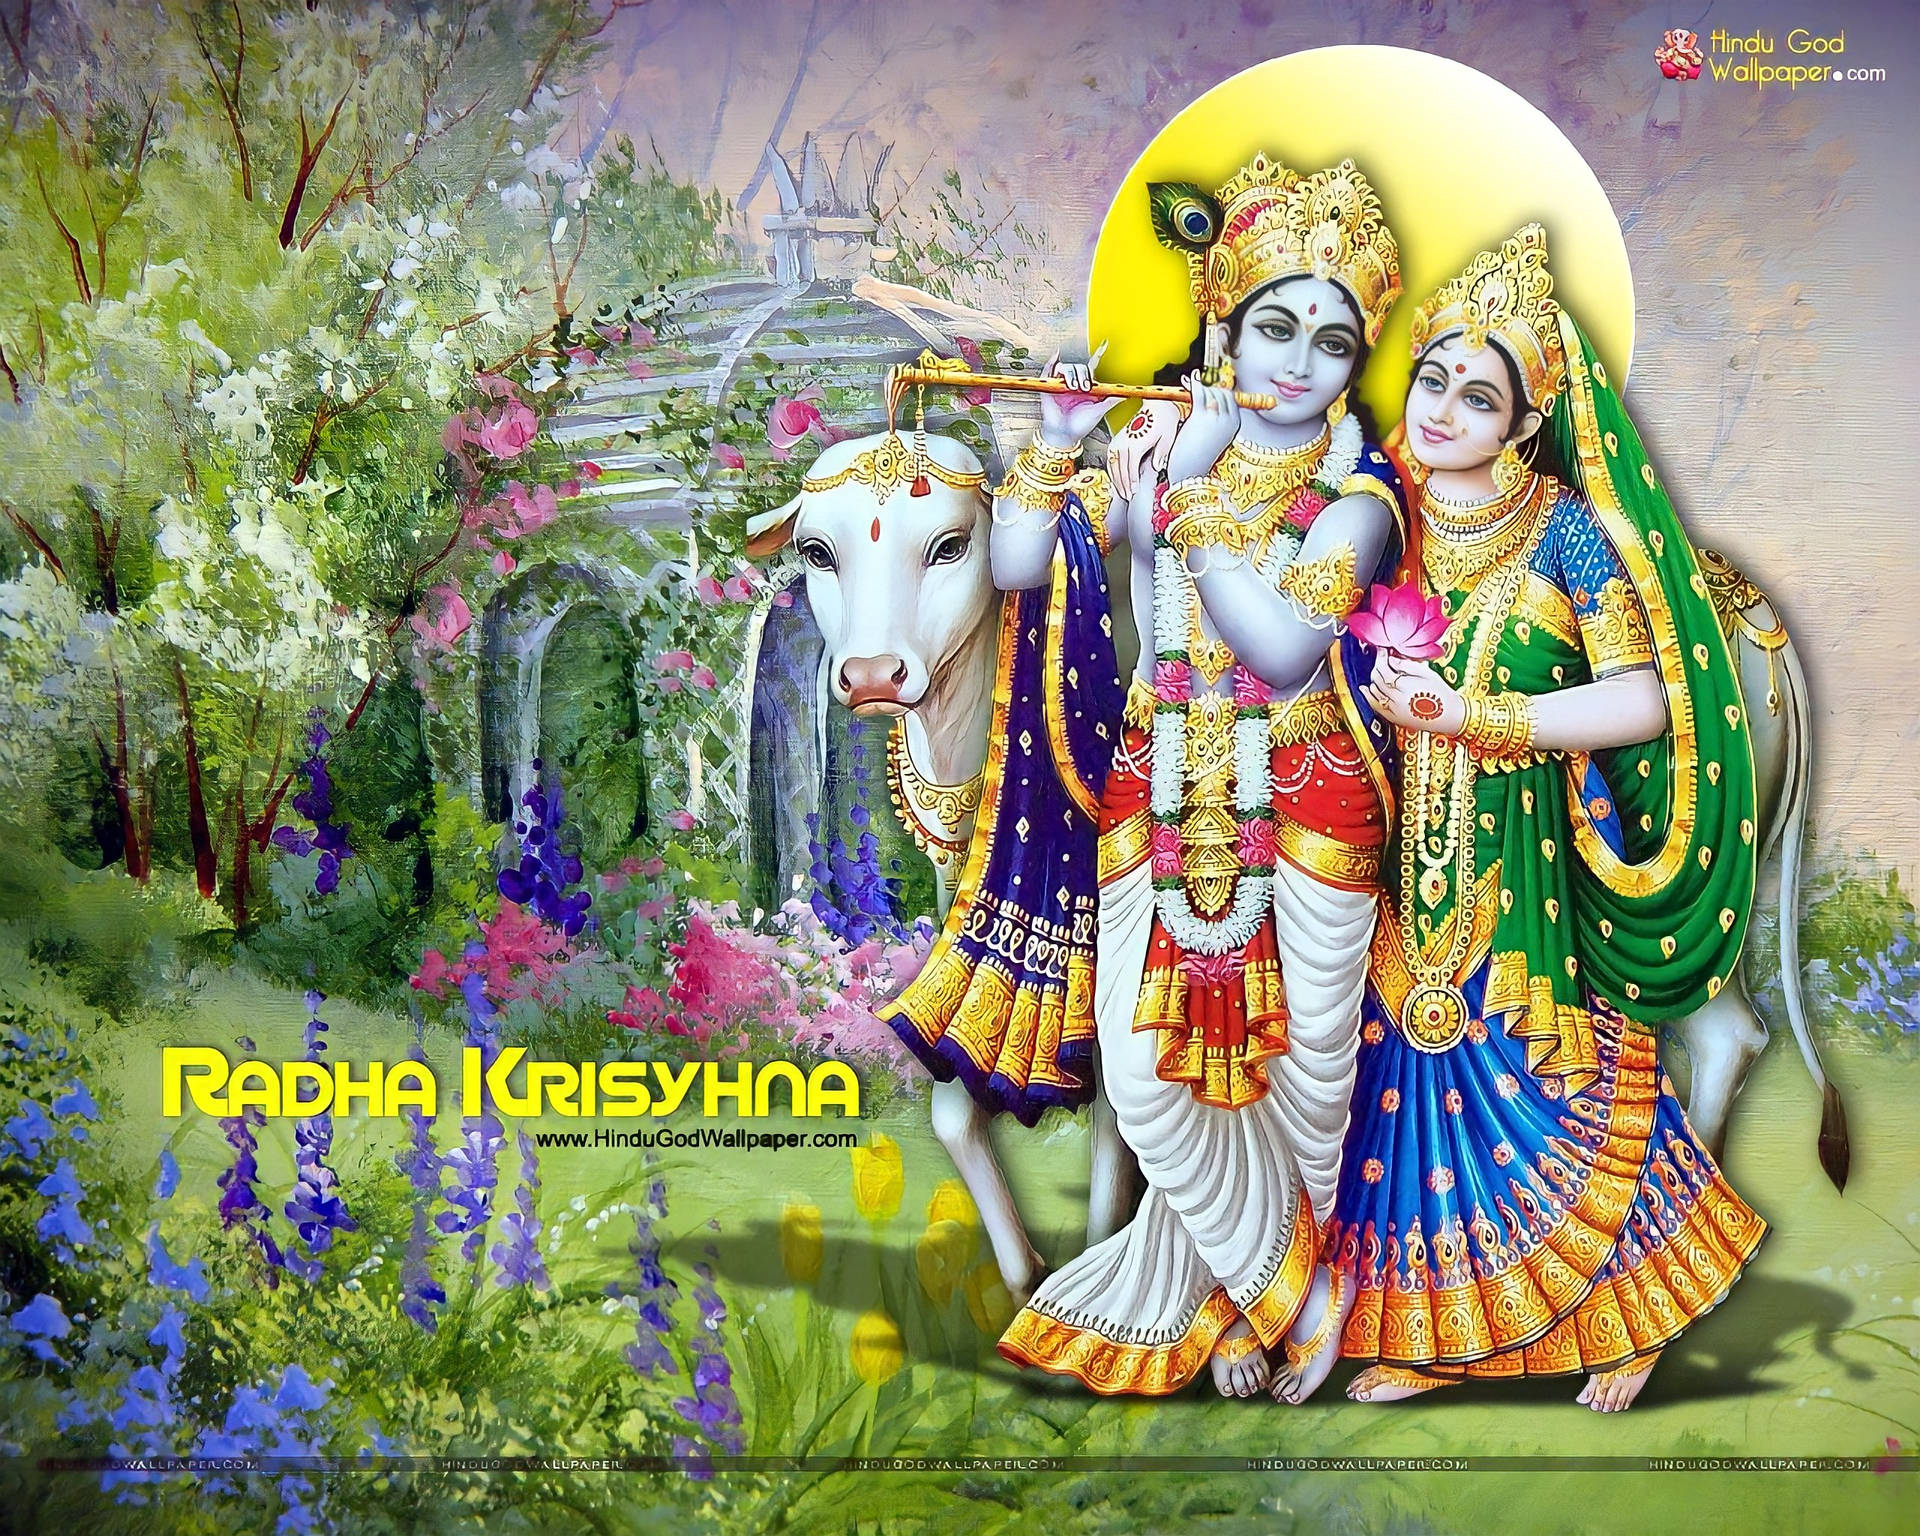 Free Radha Krishna 3d Wallpaper Downloads, [100+] Radha Krishna 3d  Wallpapers for FREE 